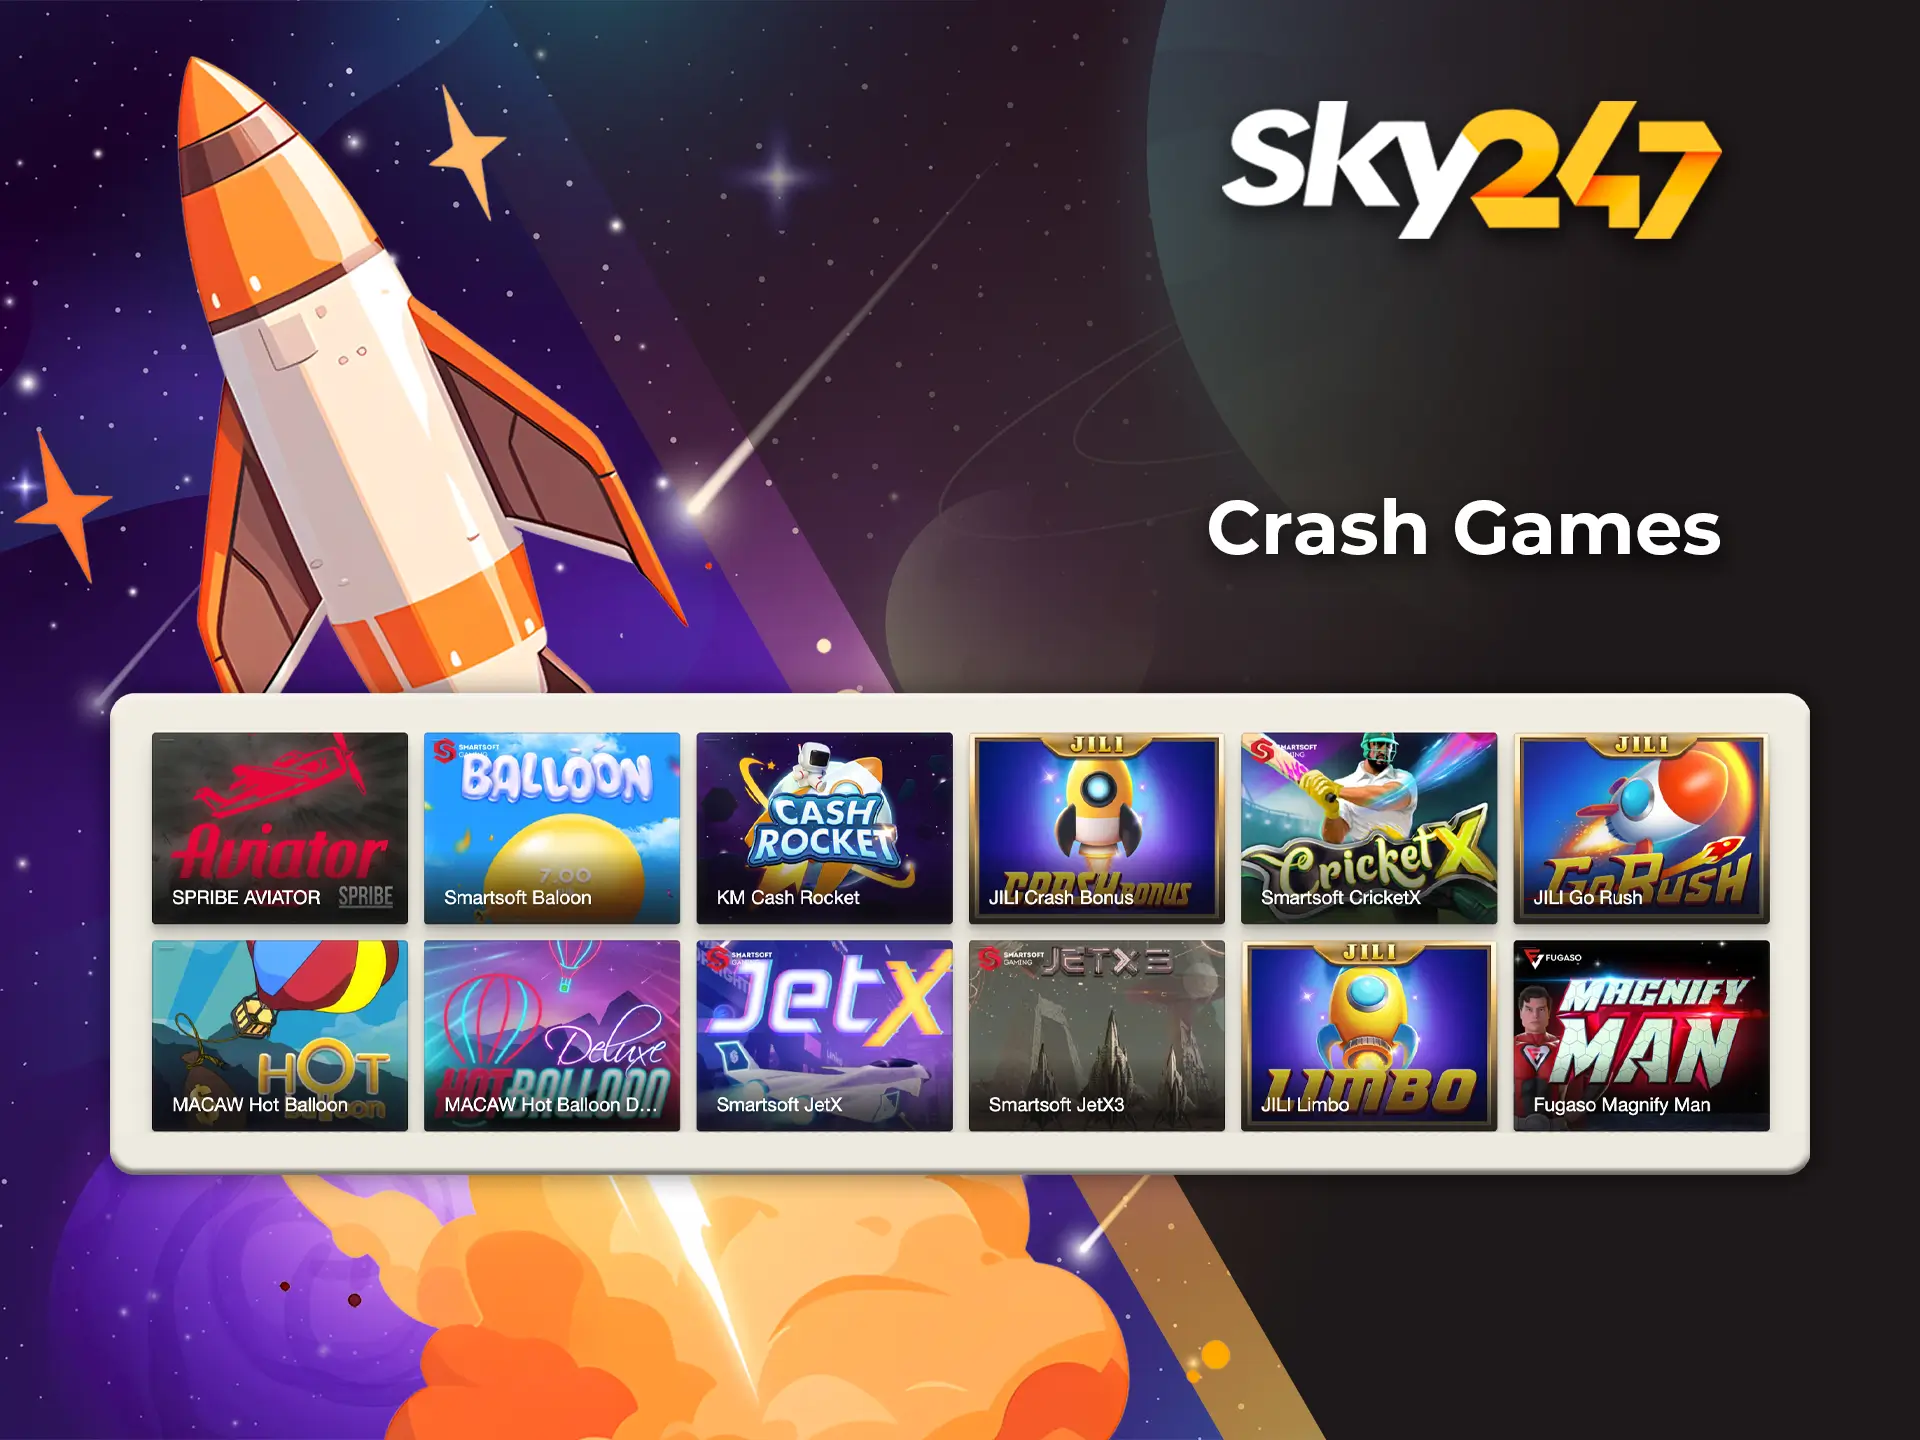 Predict the rocket crash in Sky247 crash games and win big cash.